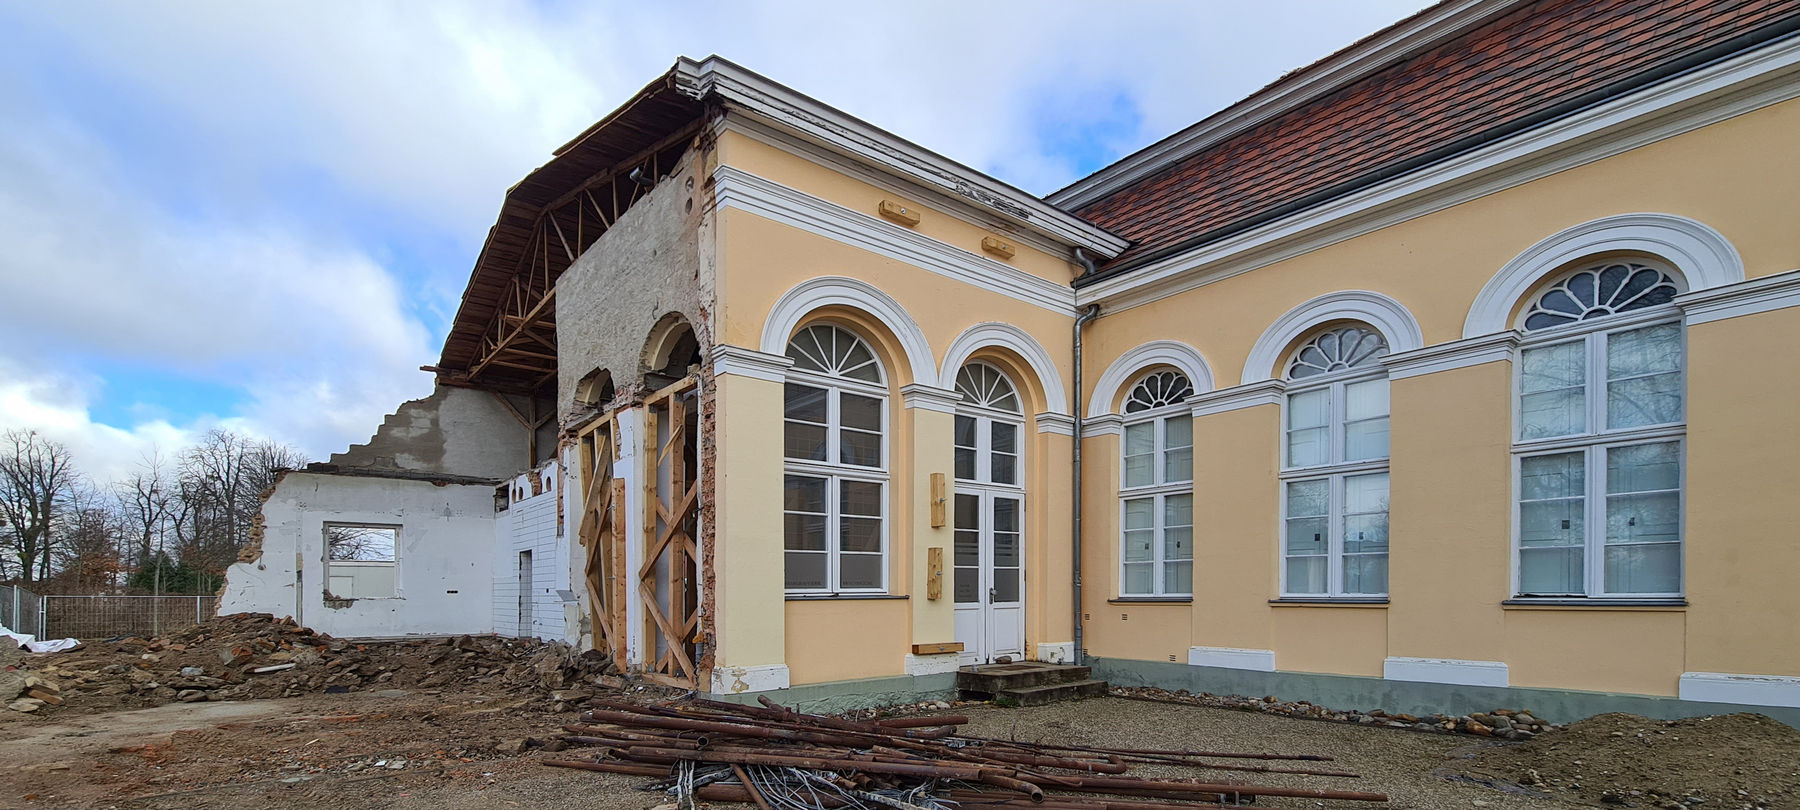 Bereich der ehemaligen Küche mit Fragmenten des Küchenanbaus, die beiden verglasten Fenster sollen wieder für die Laube geöffnet werden. © 2021 SBL Neubrandenburg